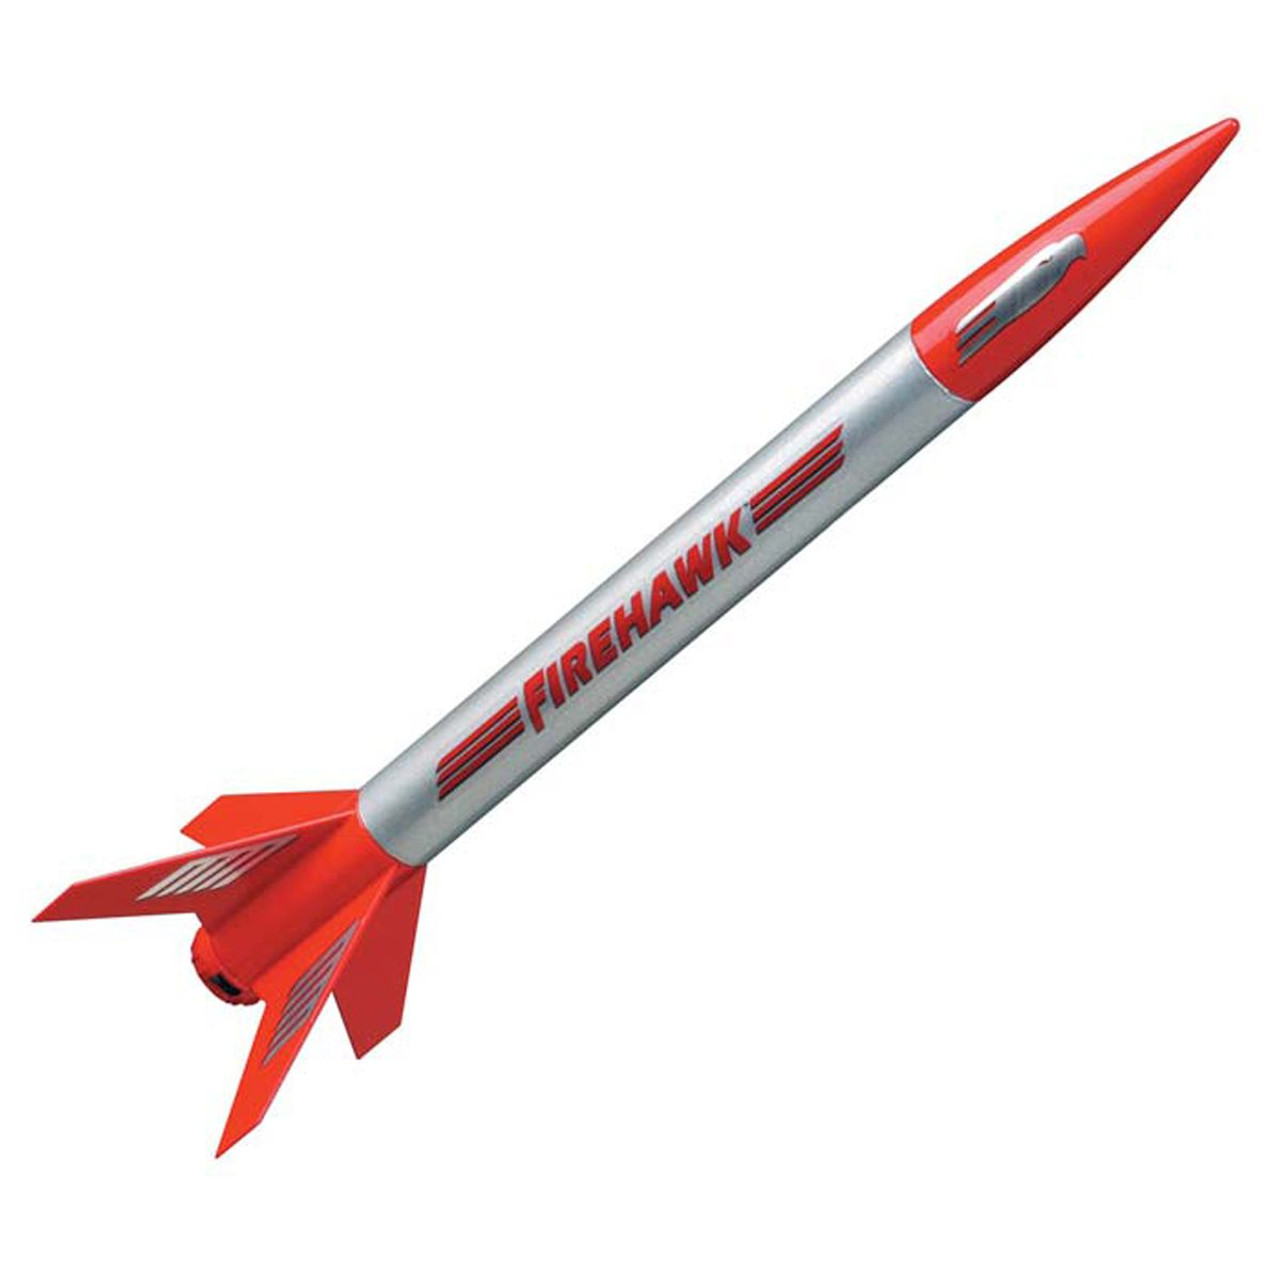 Firehawk Mini Rocket Kit E2X Easy-to-Assemble